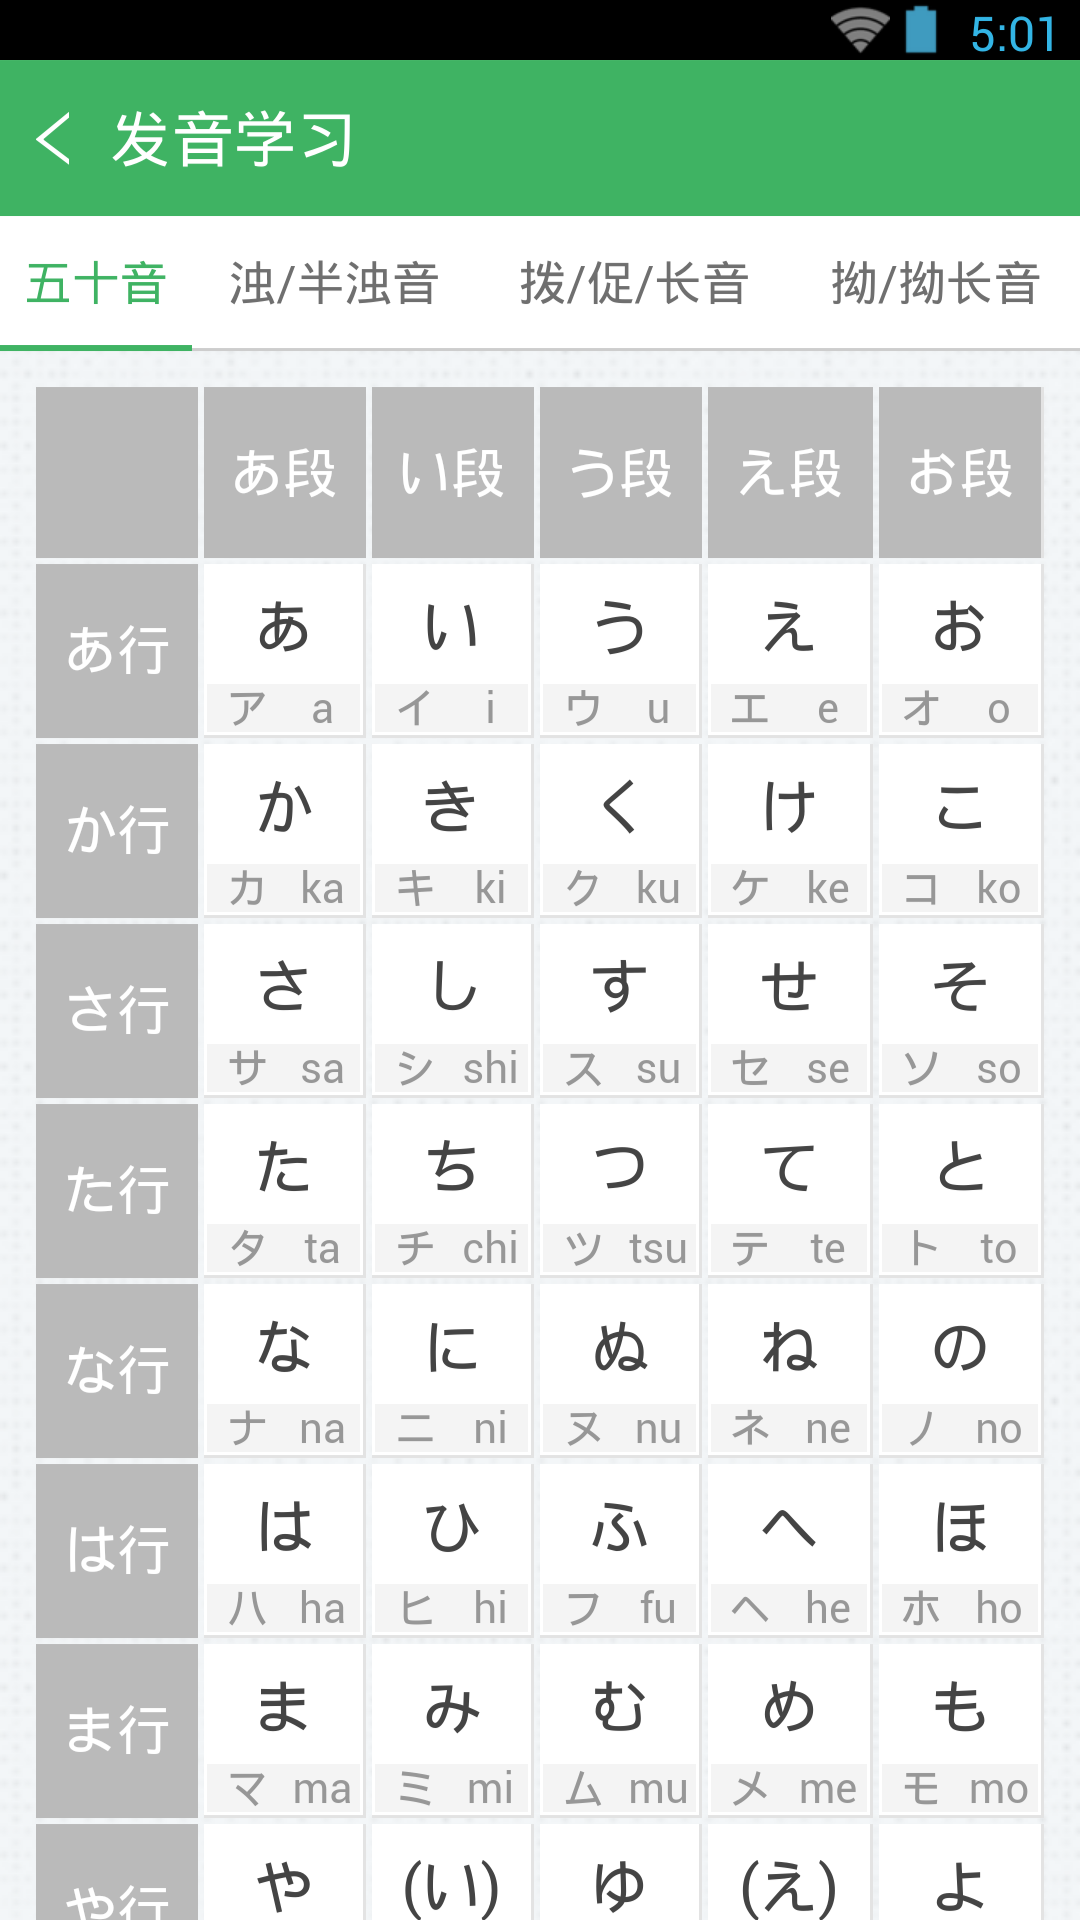 日语发音词汇会话截图5